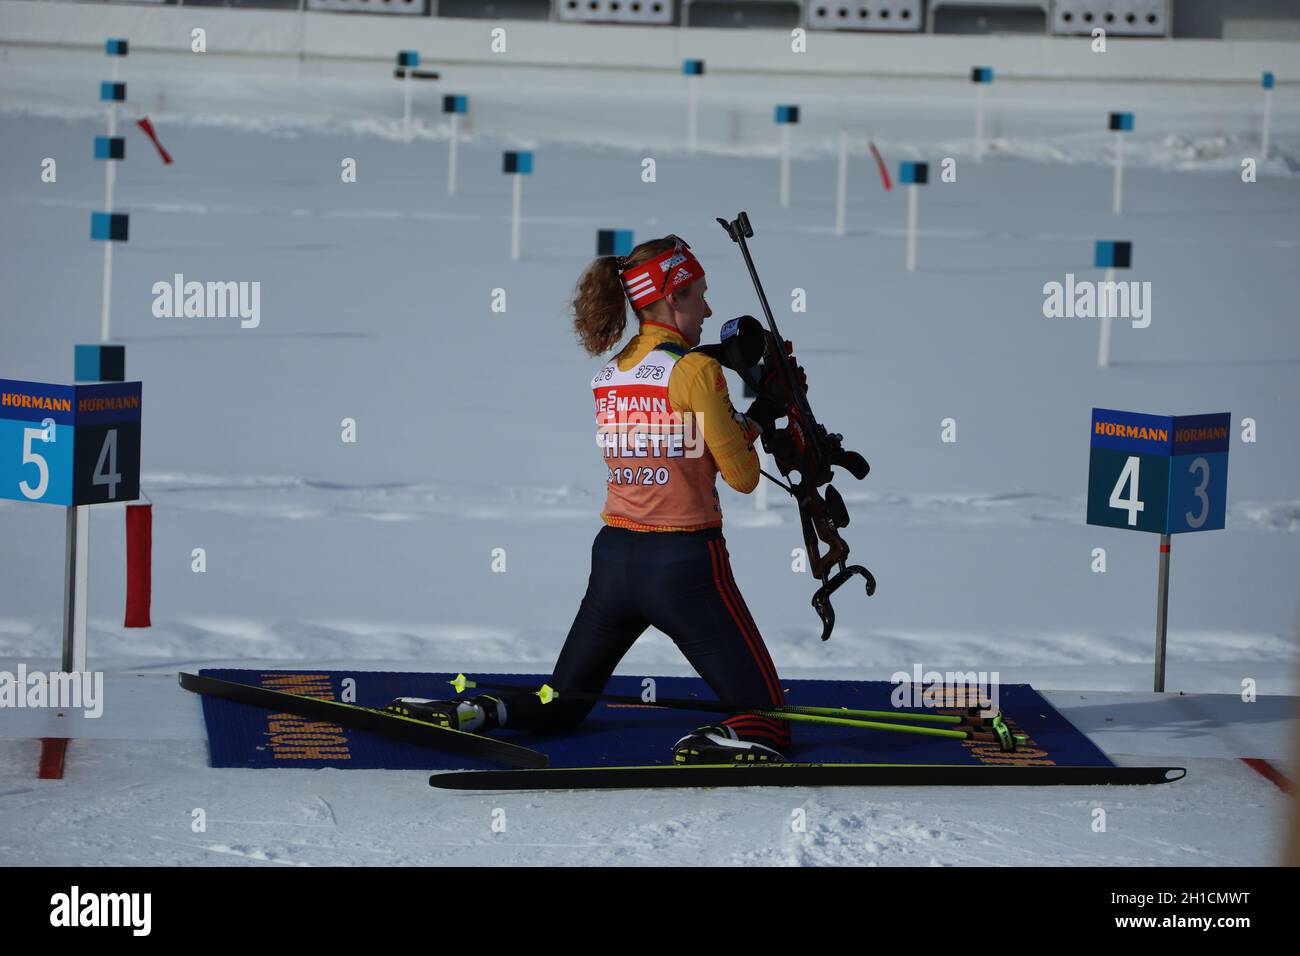 Janina Hettich (SC Schönwald) am Schießstand währen des Trainings zur IBU Biathlon-Weltmeisterschaft Antholz 2020 Stock Photo